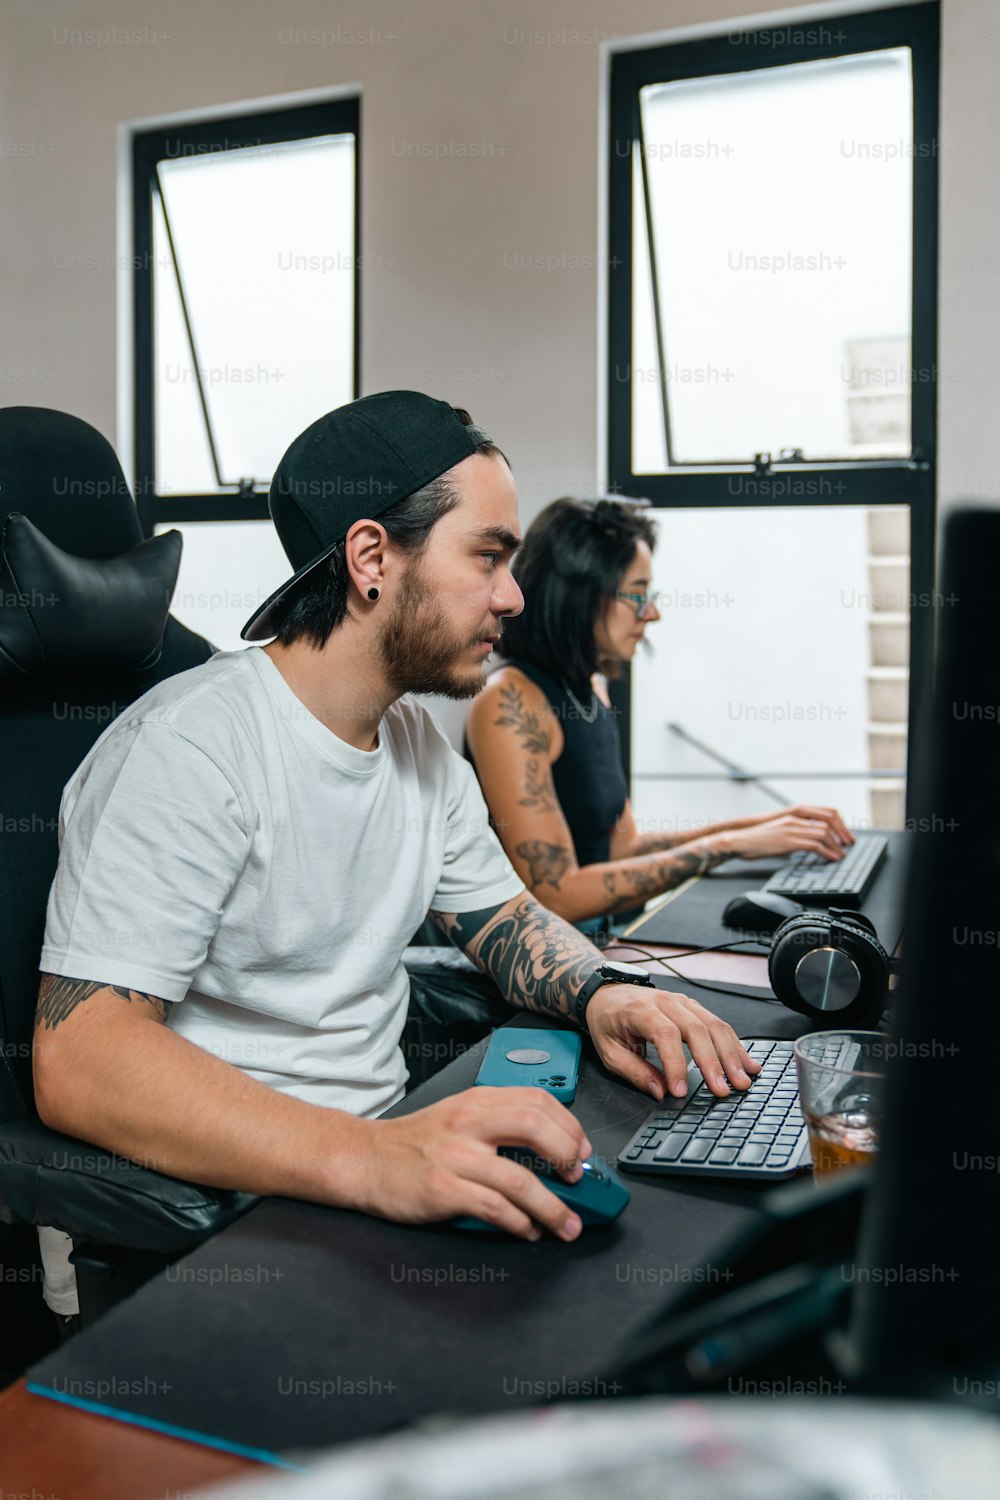 Un uomo seduto davanti a un computer portatile